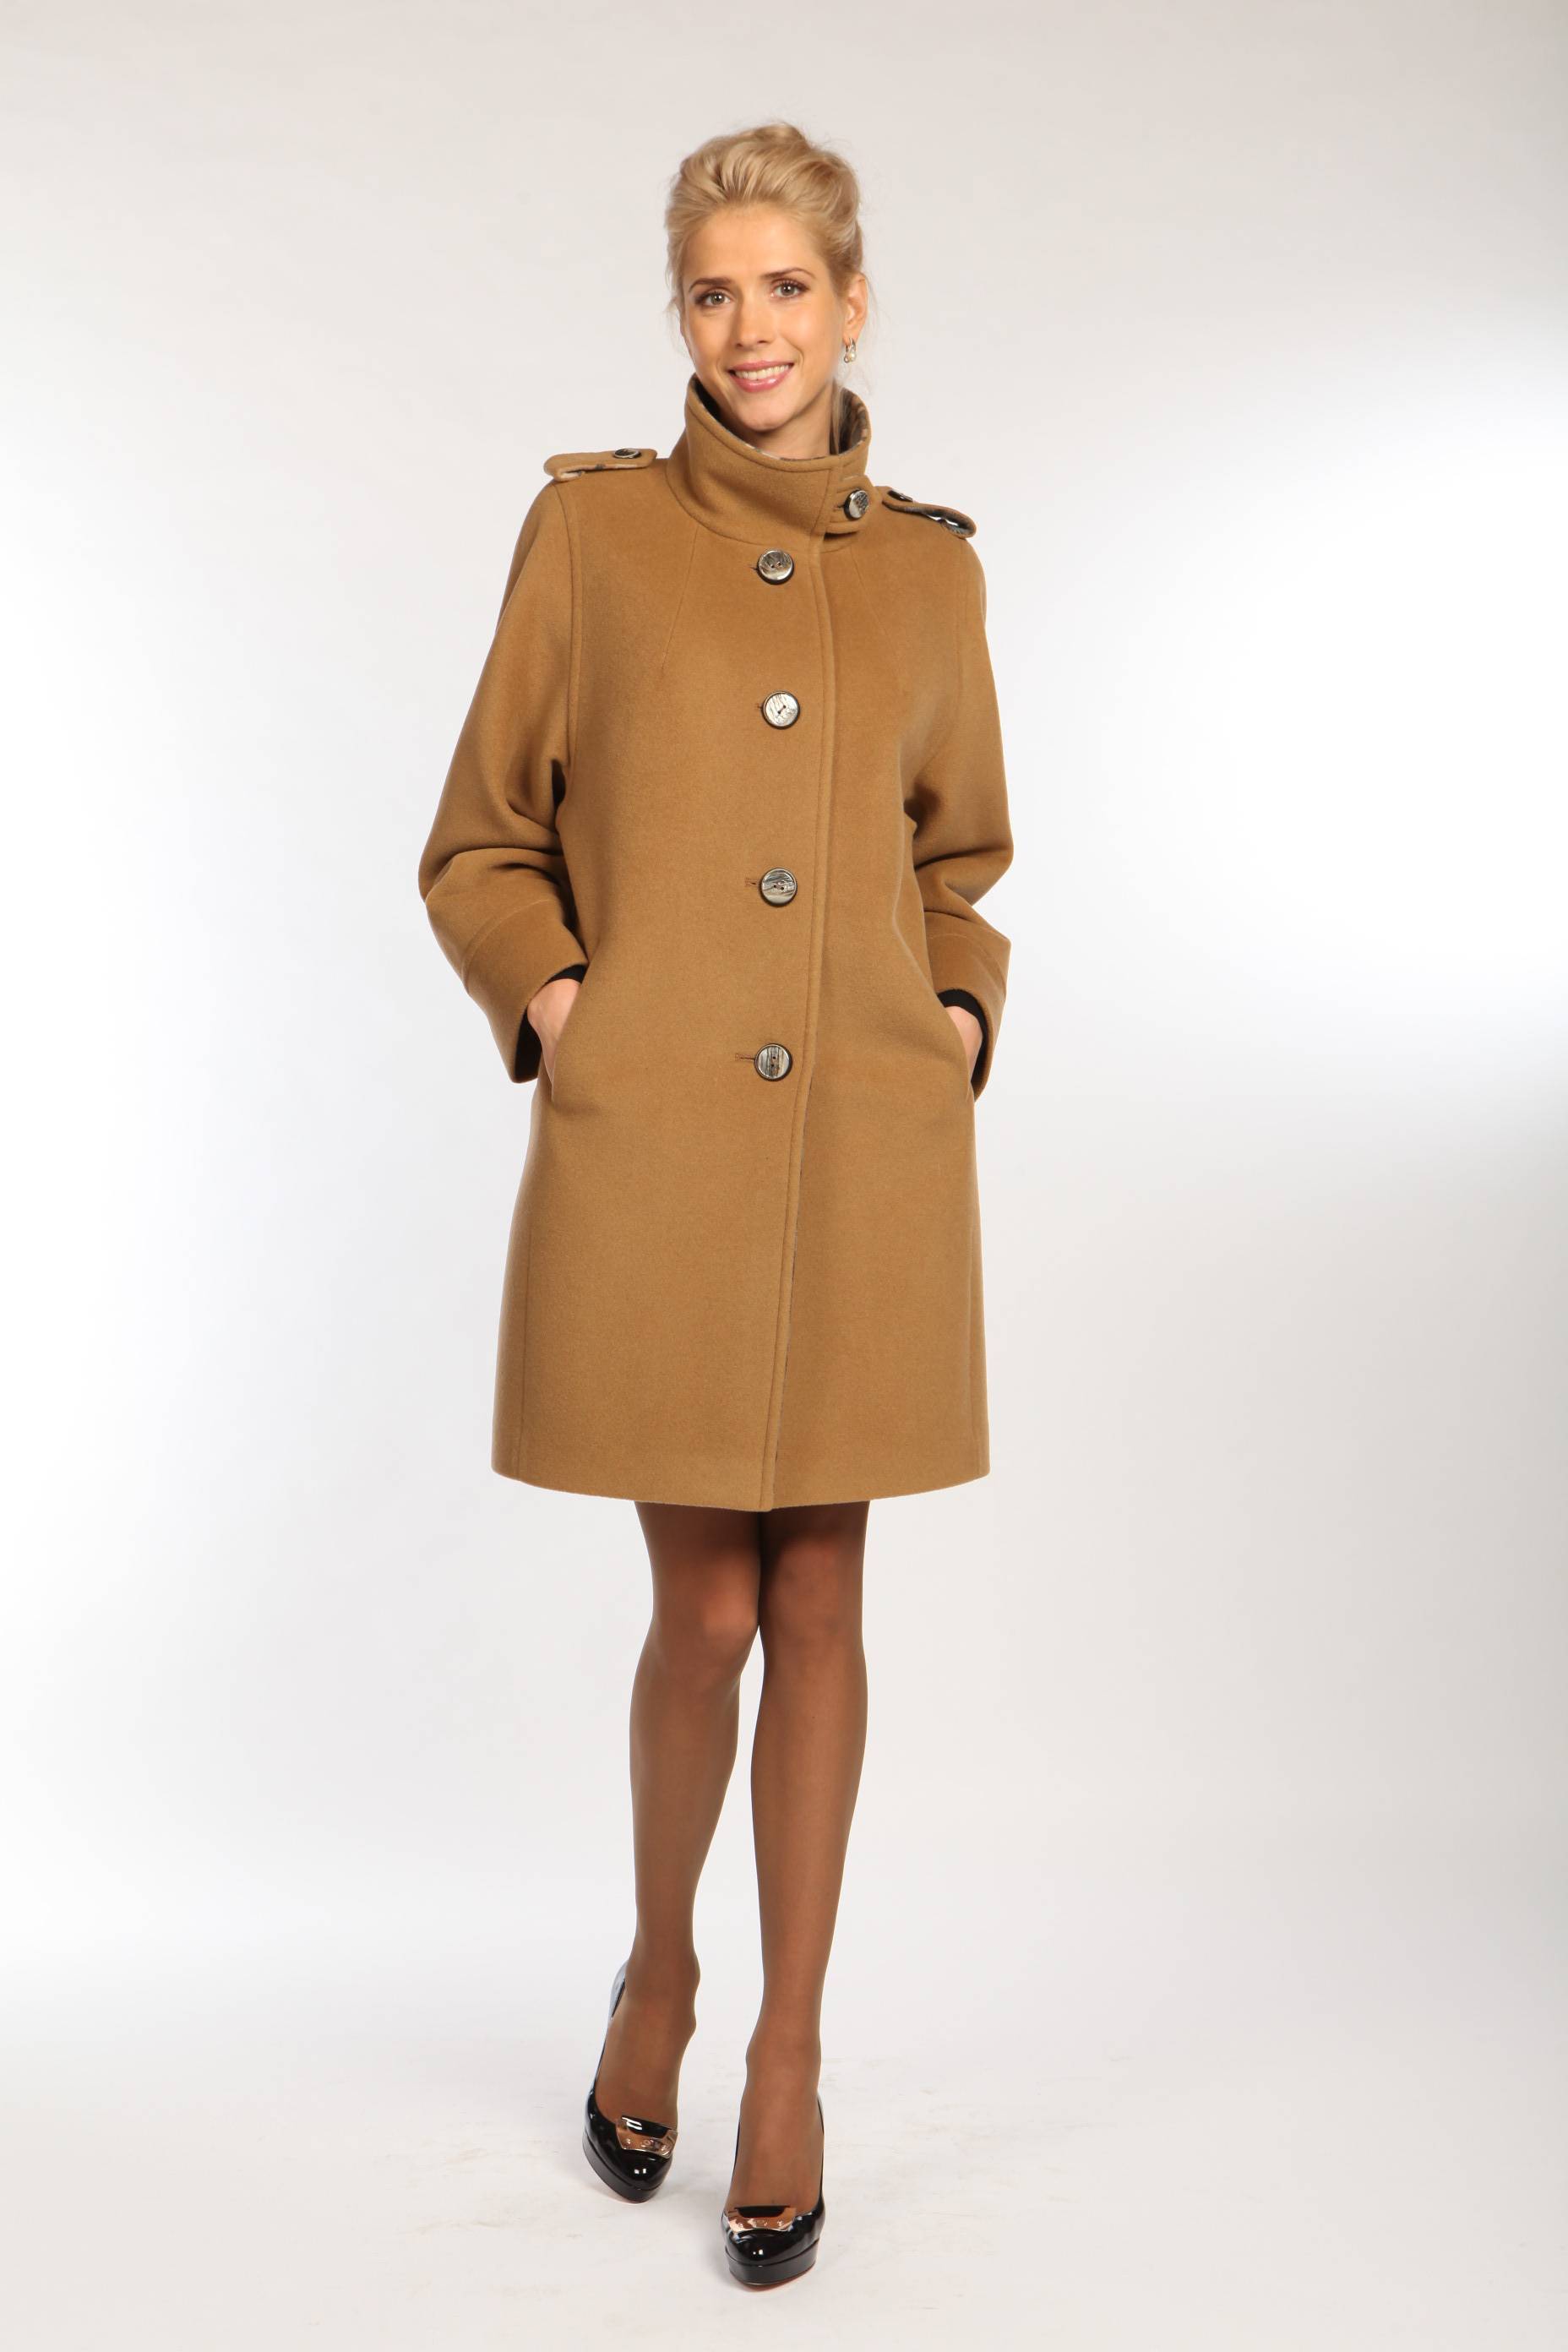 Купить женское пальто в москве демисезонное модное. Женское пальто фабрики Рене модель 21988. Осеннее пальто. Демисезонное пальто. Пальто женское осень.